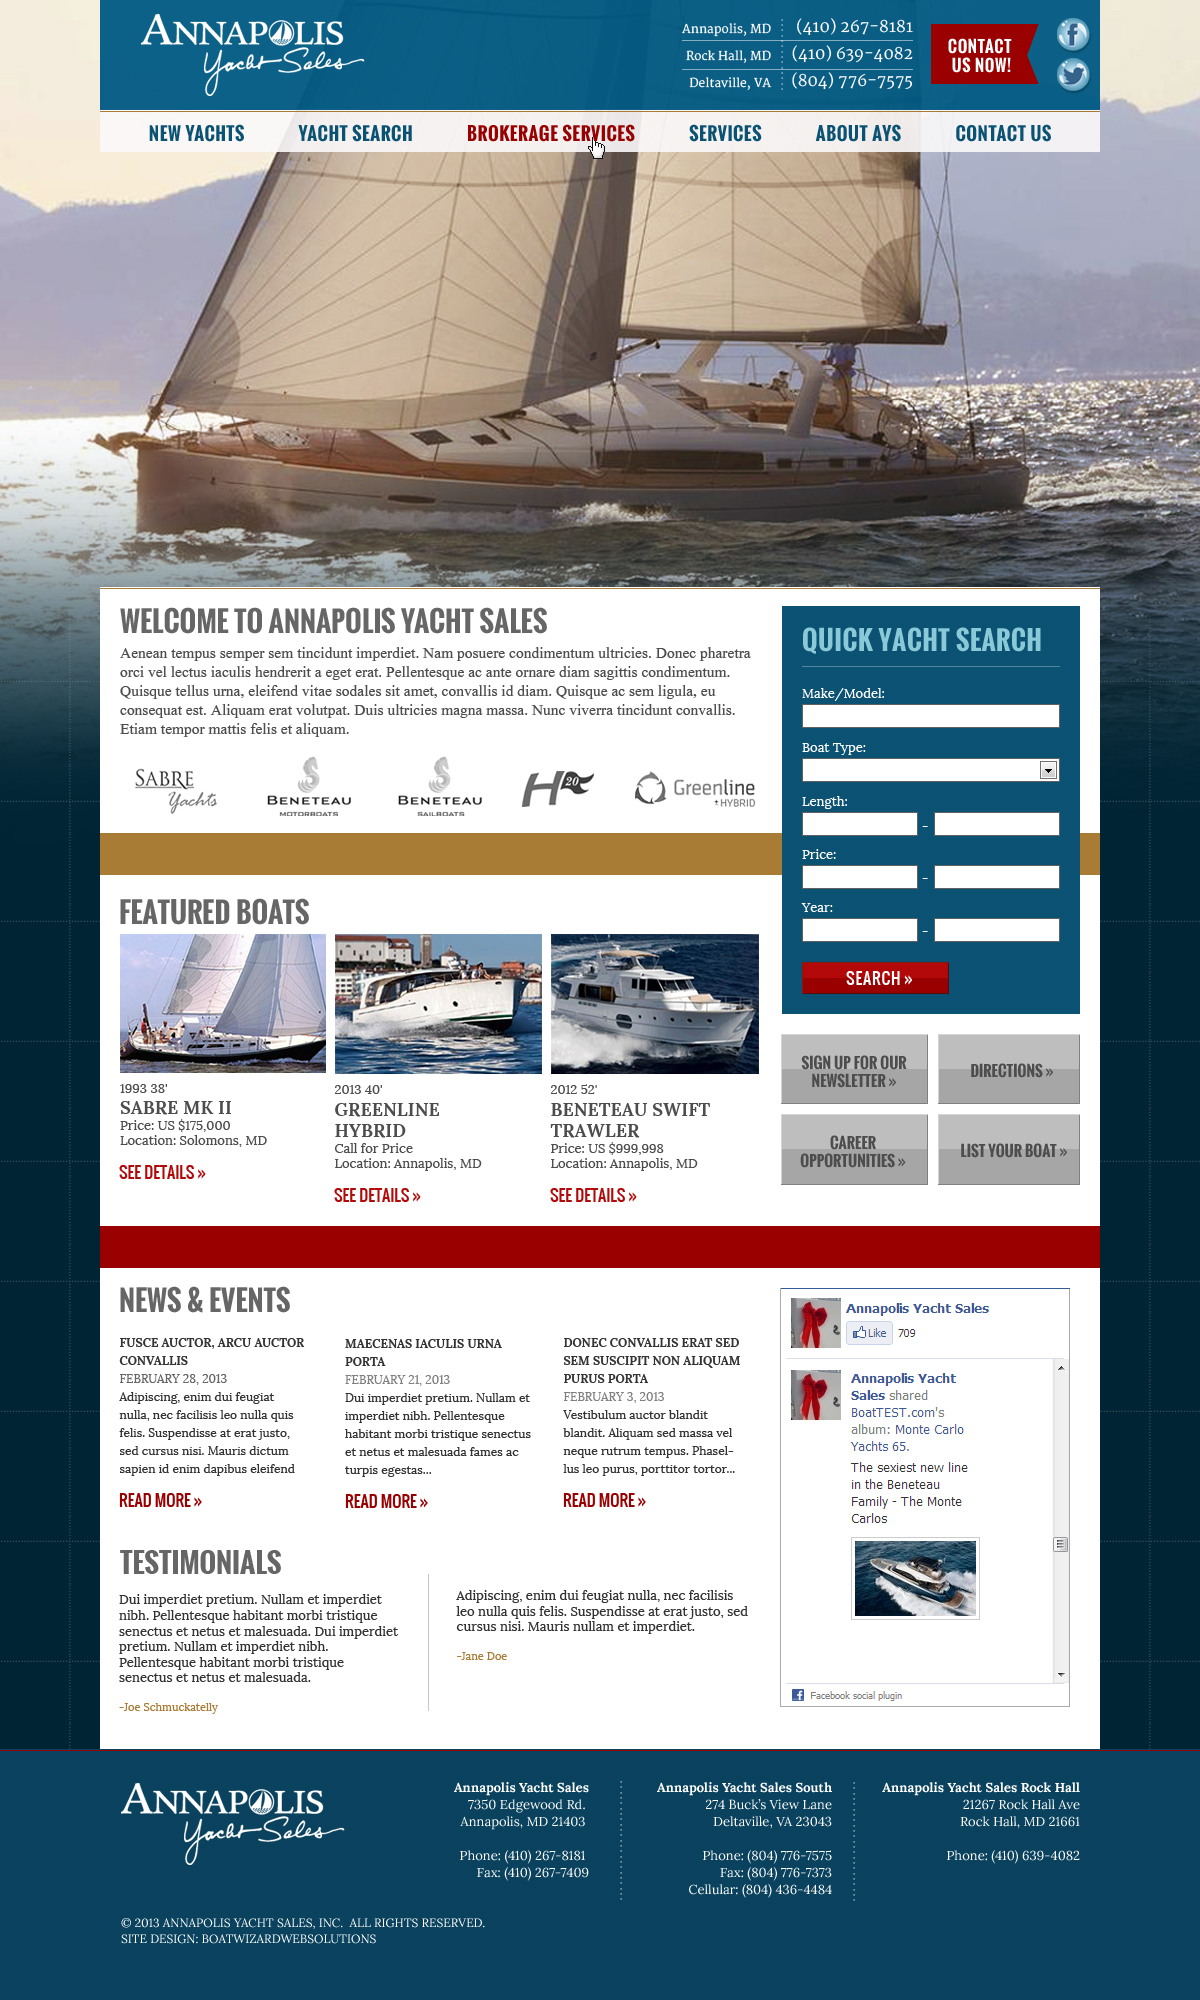 Annapolis Yacht Sales web site